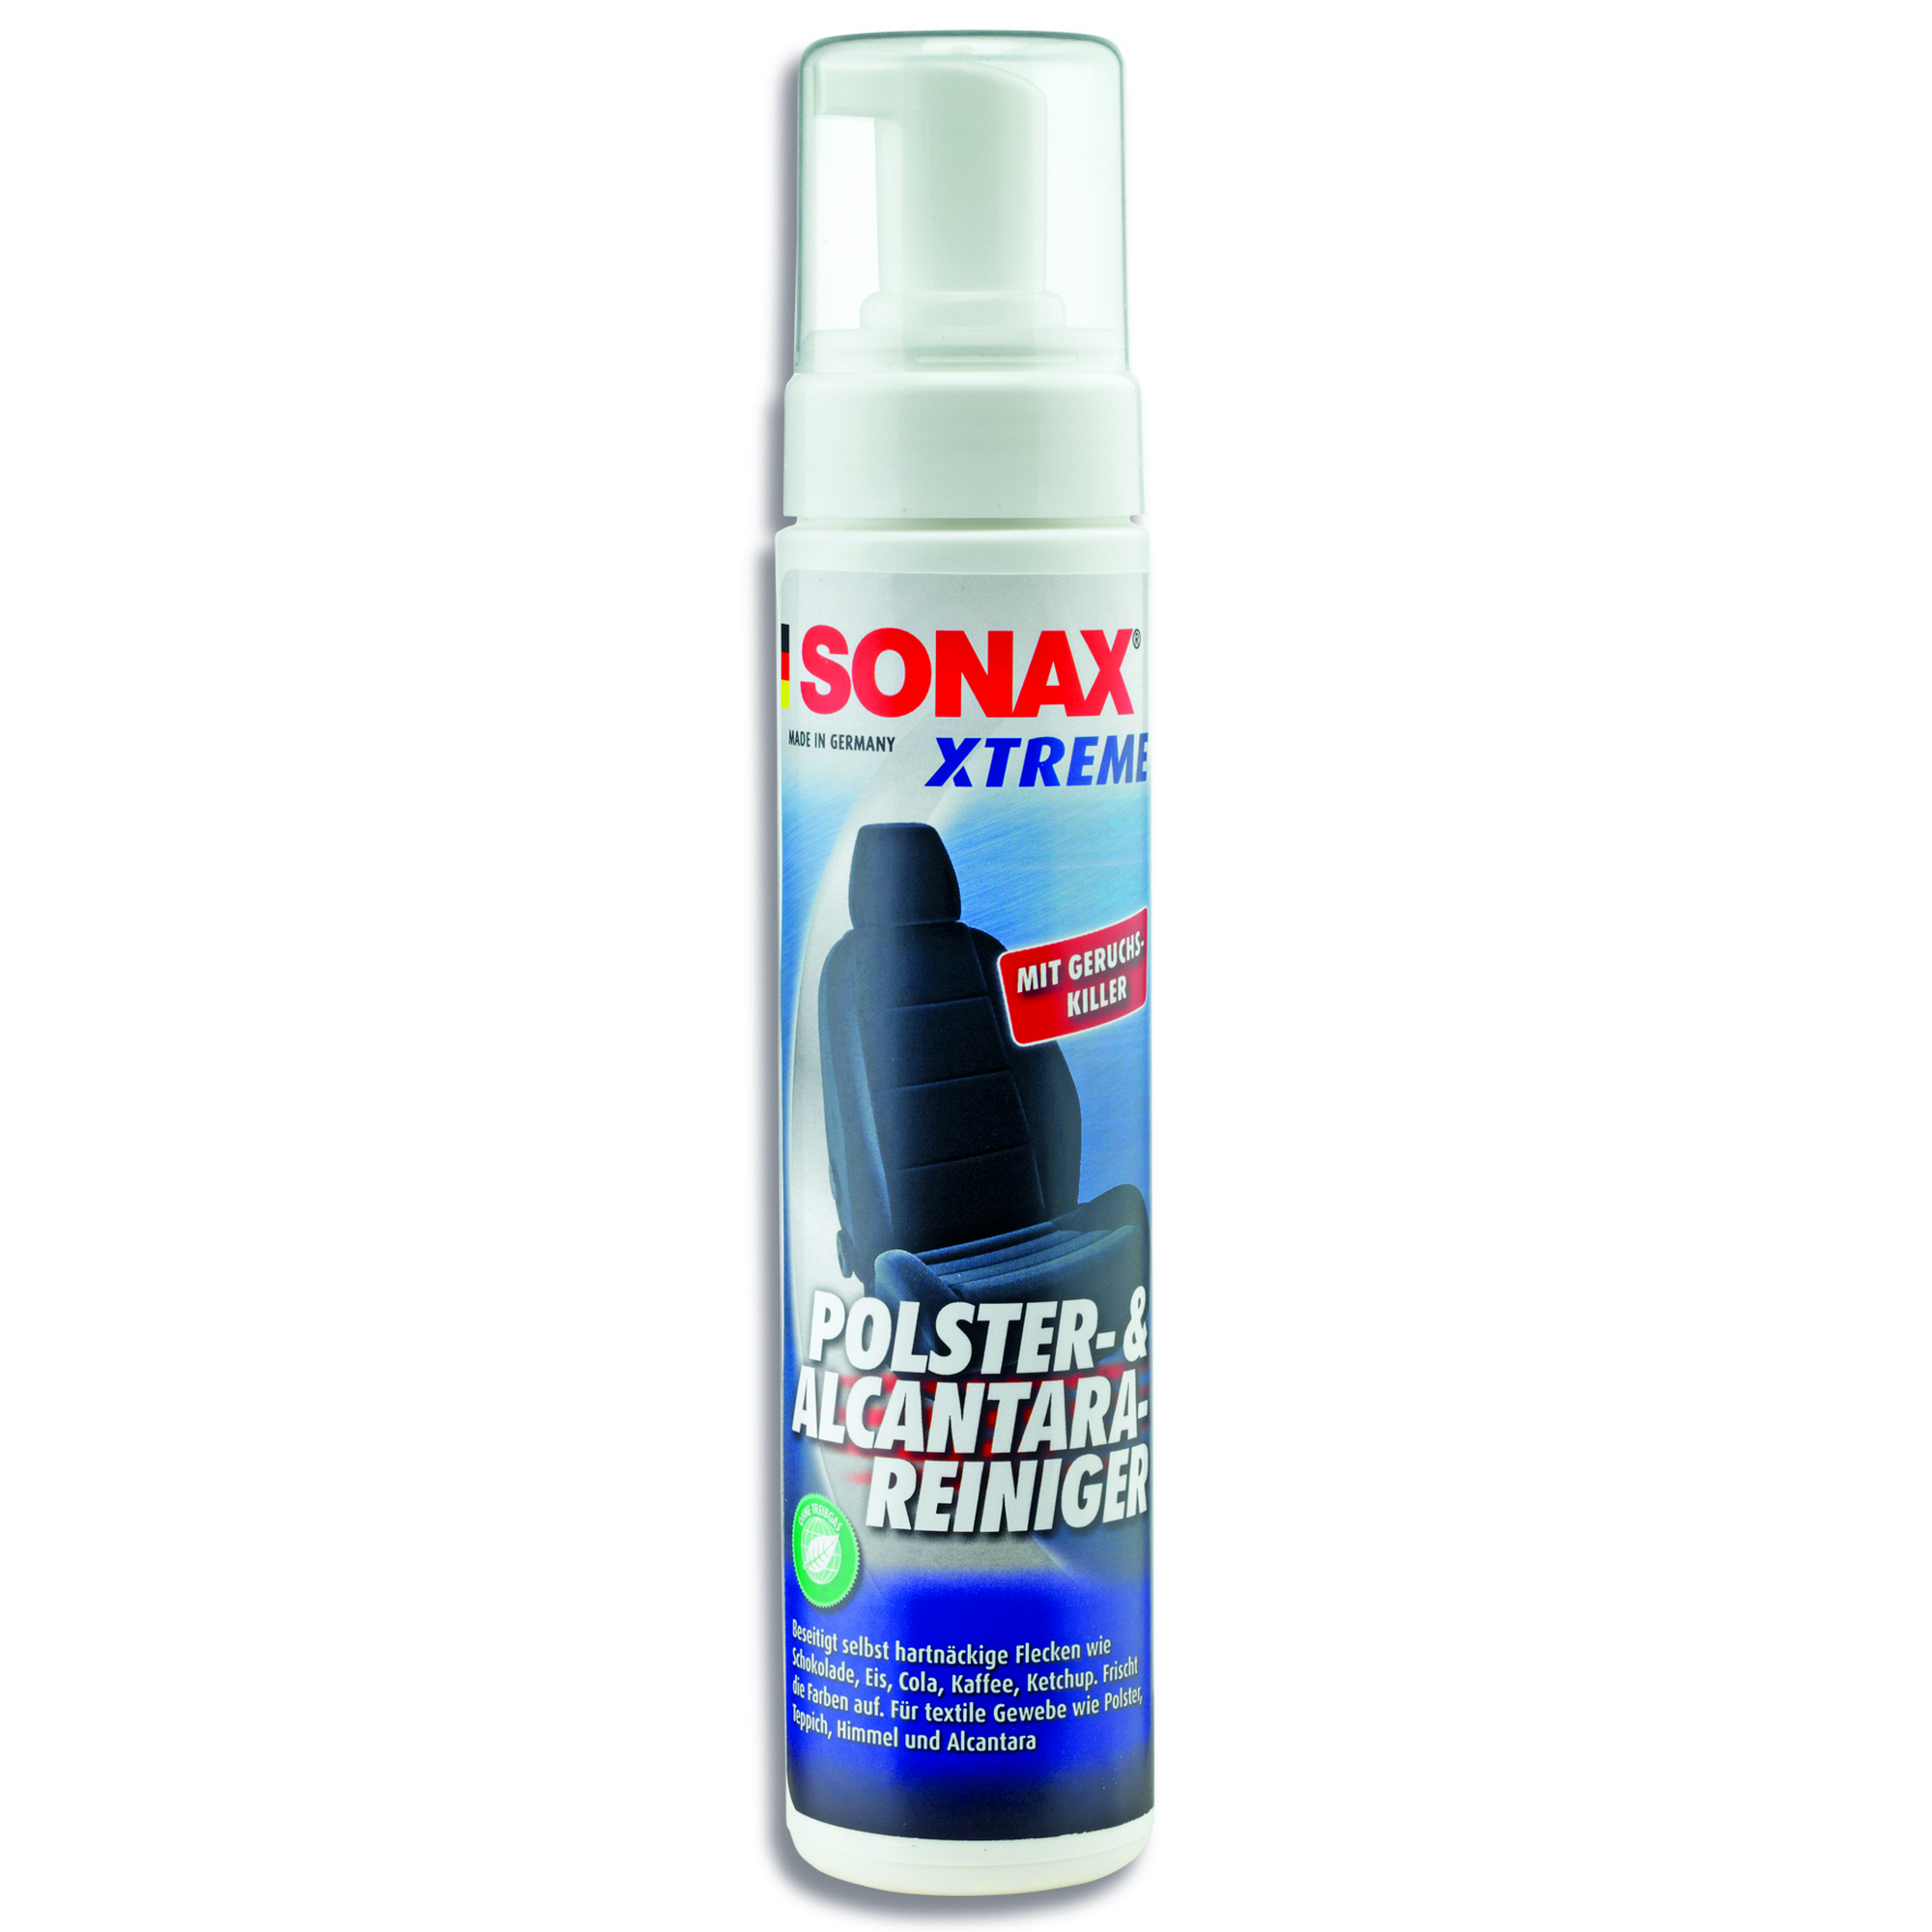 Polster- und Alcantara-Reiniger 'Xtreme' 250 ml